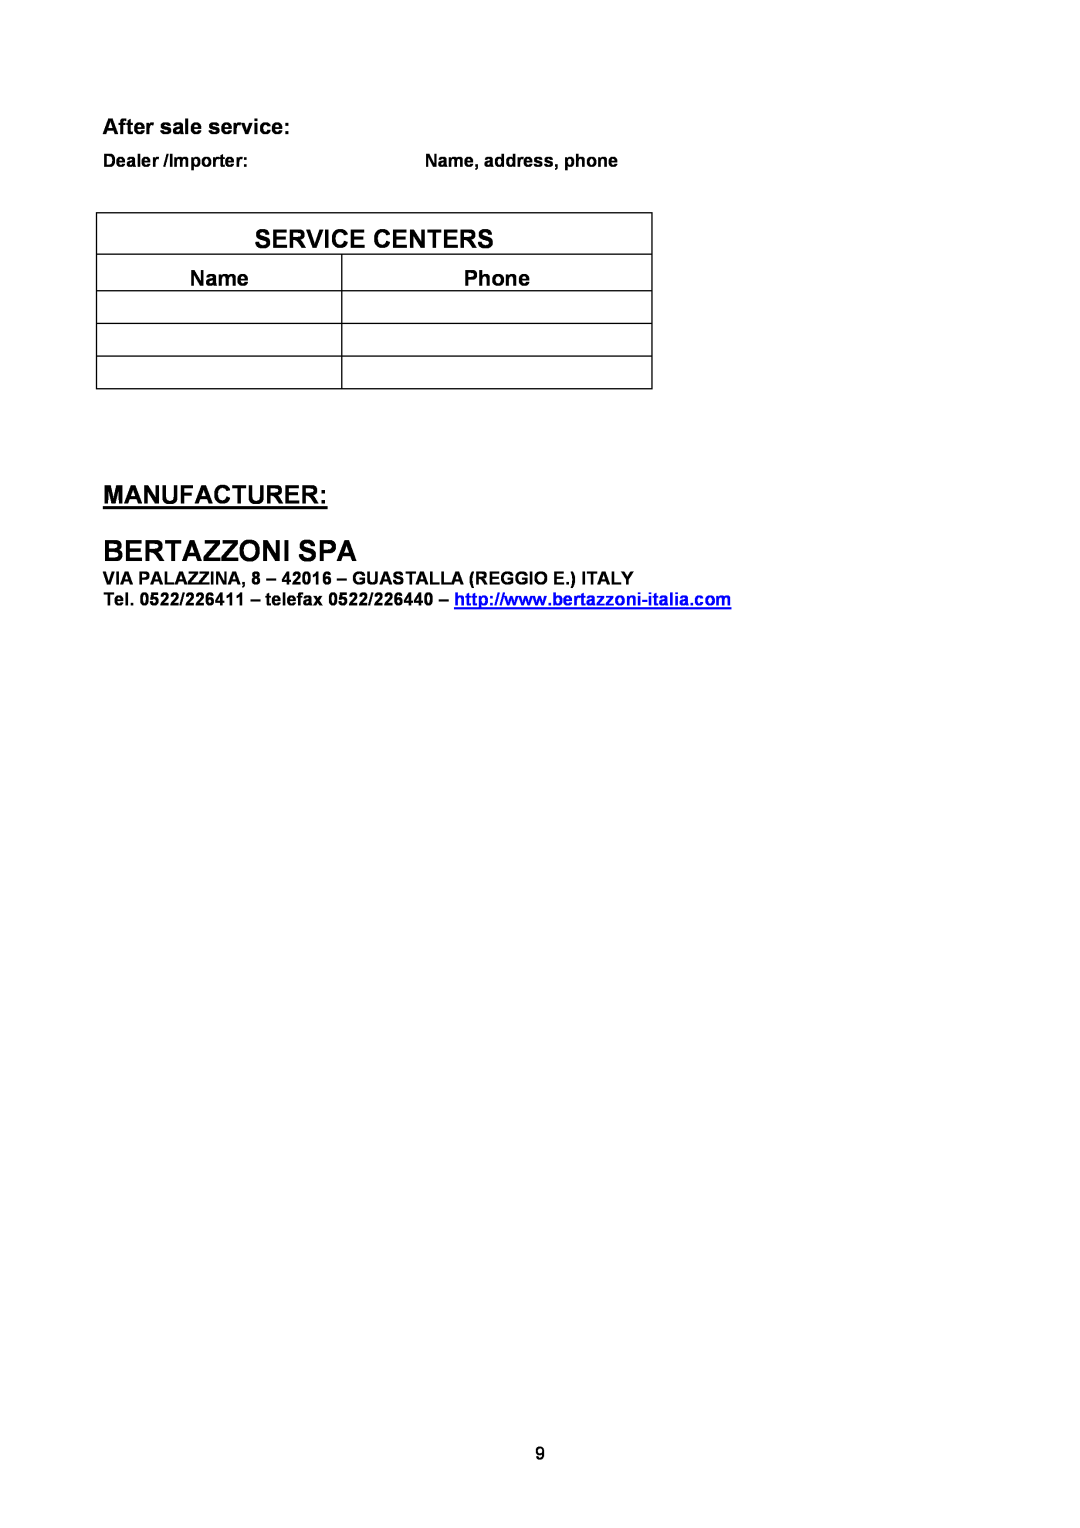 Bertazzoni B3W0..U4X(2 OR 5)D manual Bertazzoni Spa, Service Centers, Manufacturer, After sale service, Name, Phone 